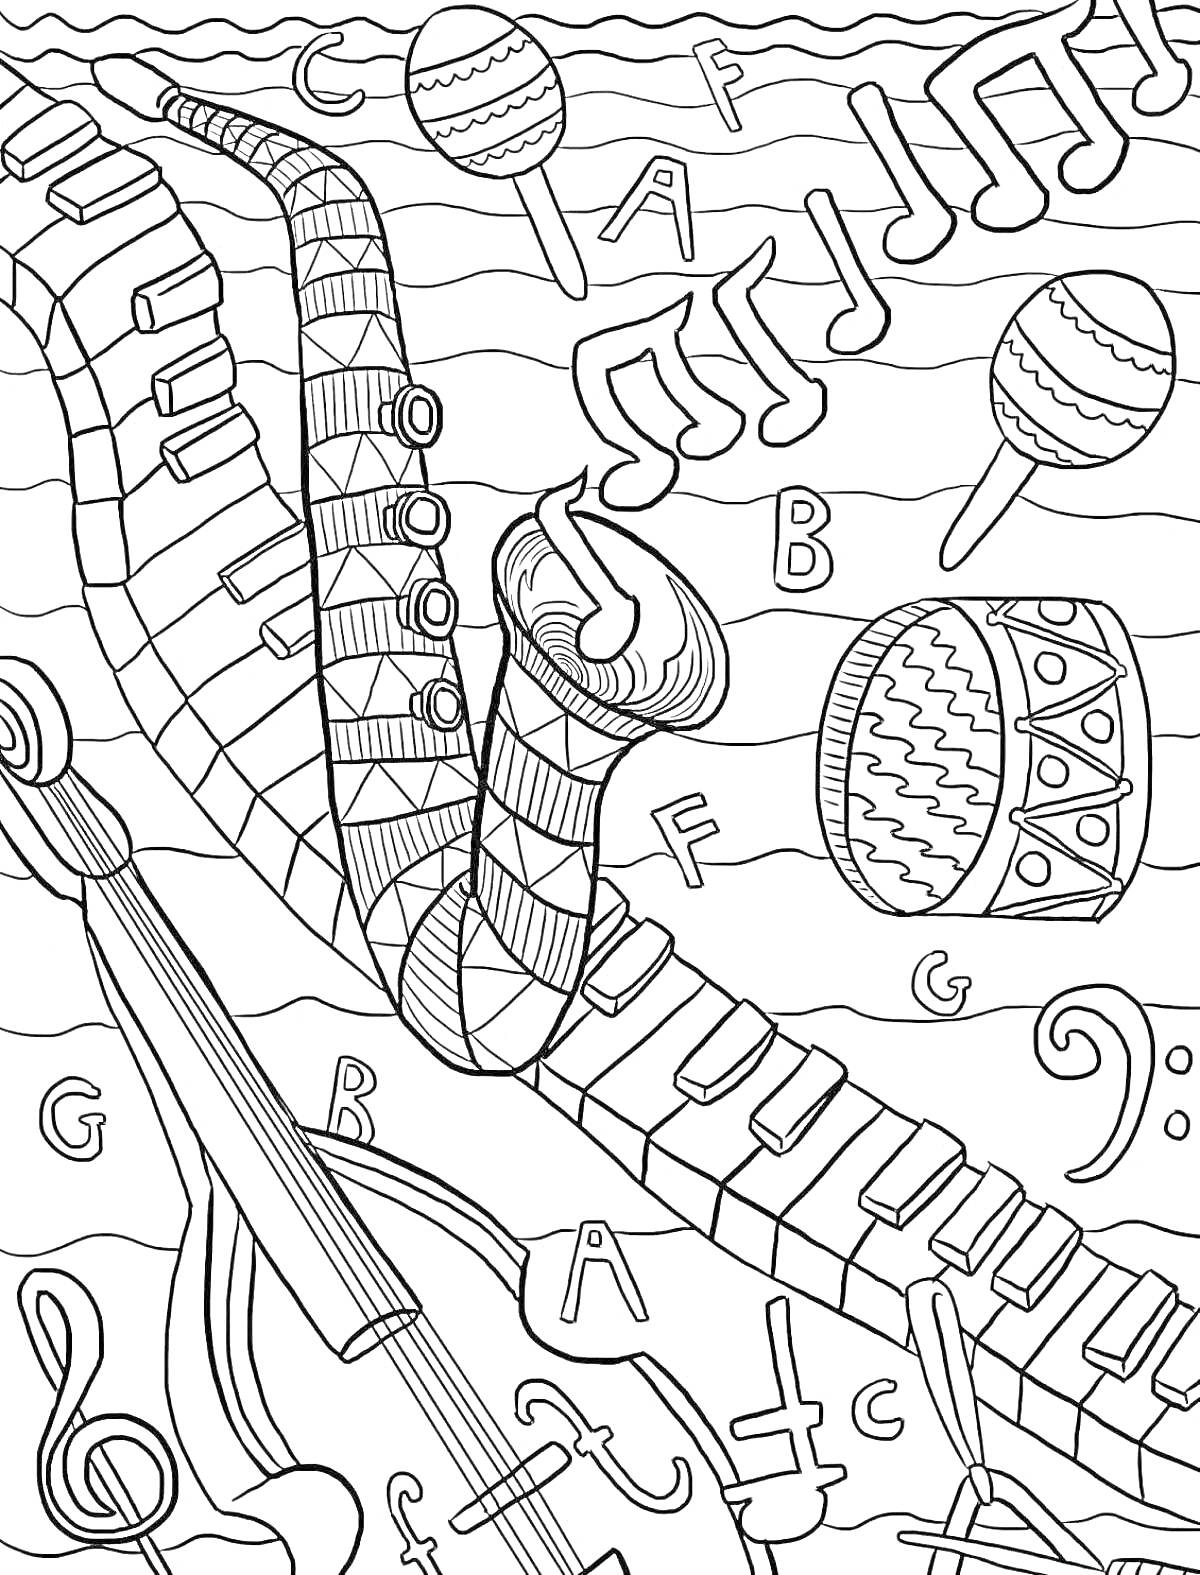 Раскраска Раскраска с изображением трубы, клавиш пианино, скрипки, барабана, маракасов, музыкальных нот и букв со значками